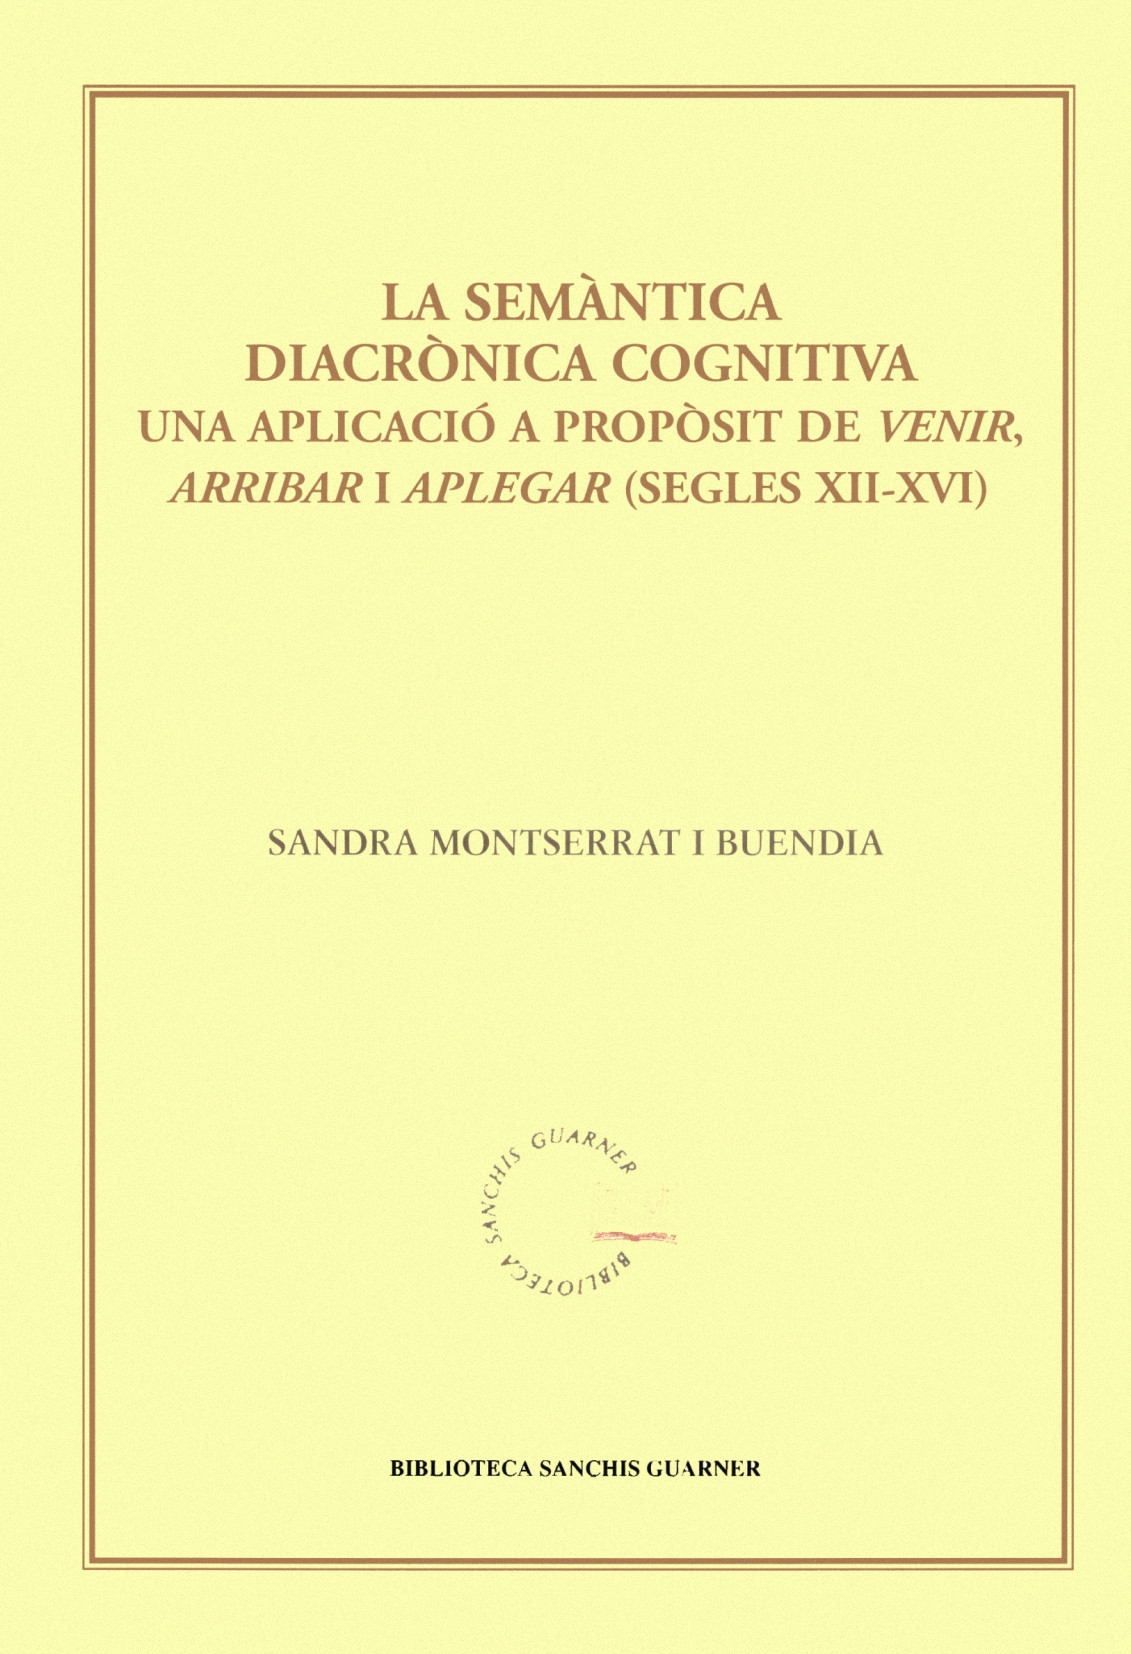 Sandra Montserrat i Buendia